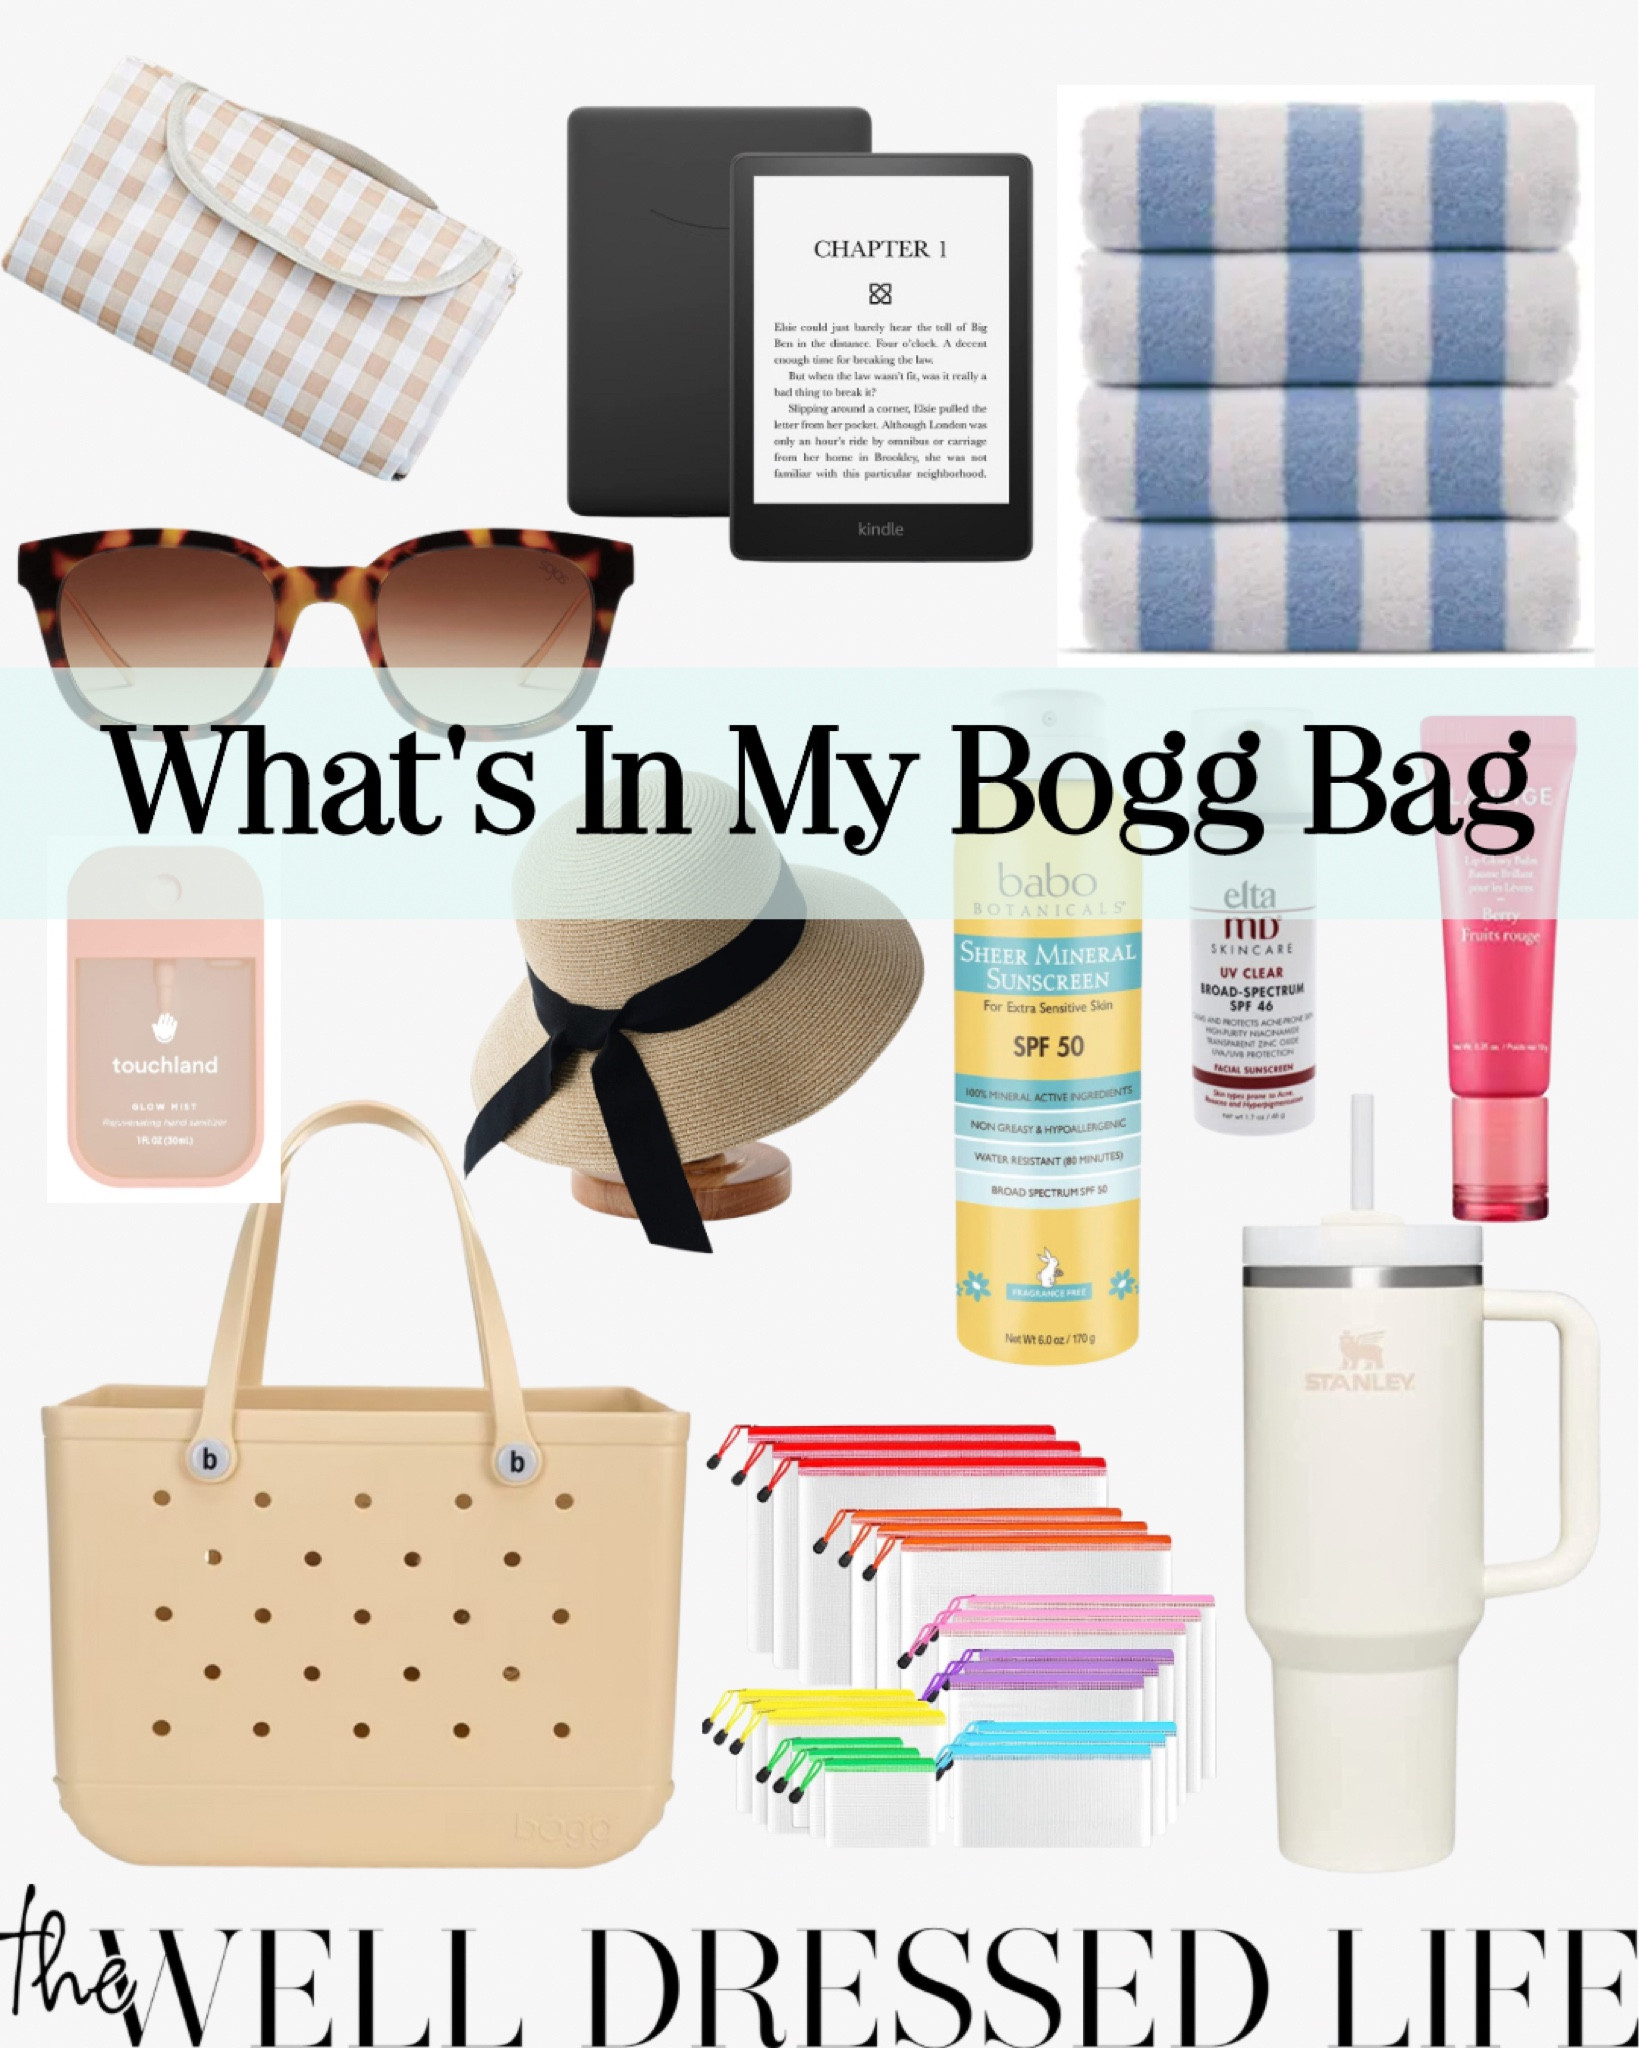 Bogg Bag Original Bogg Bag curated on LTK